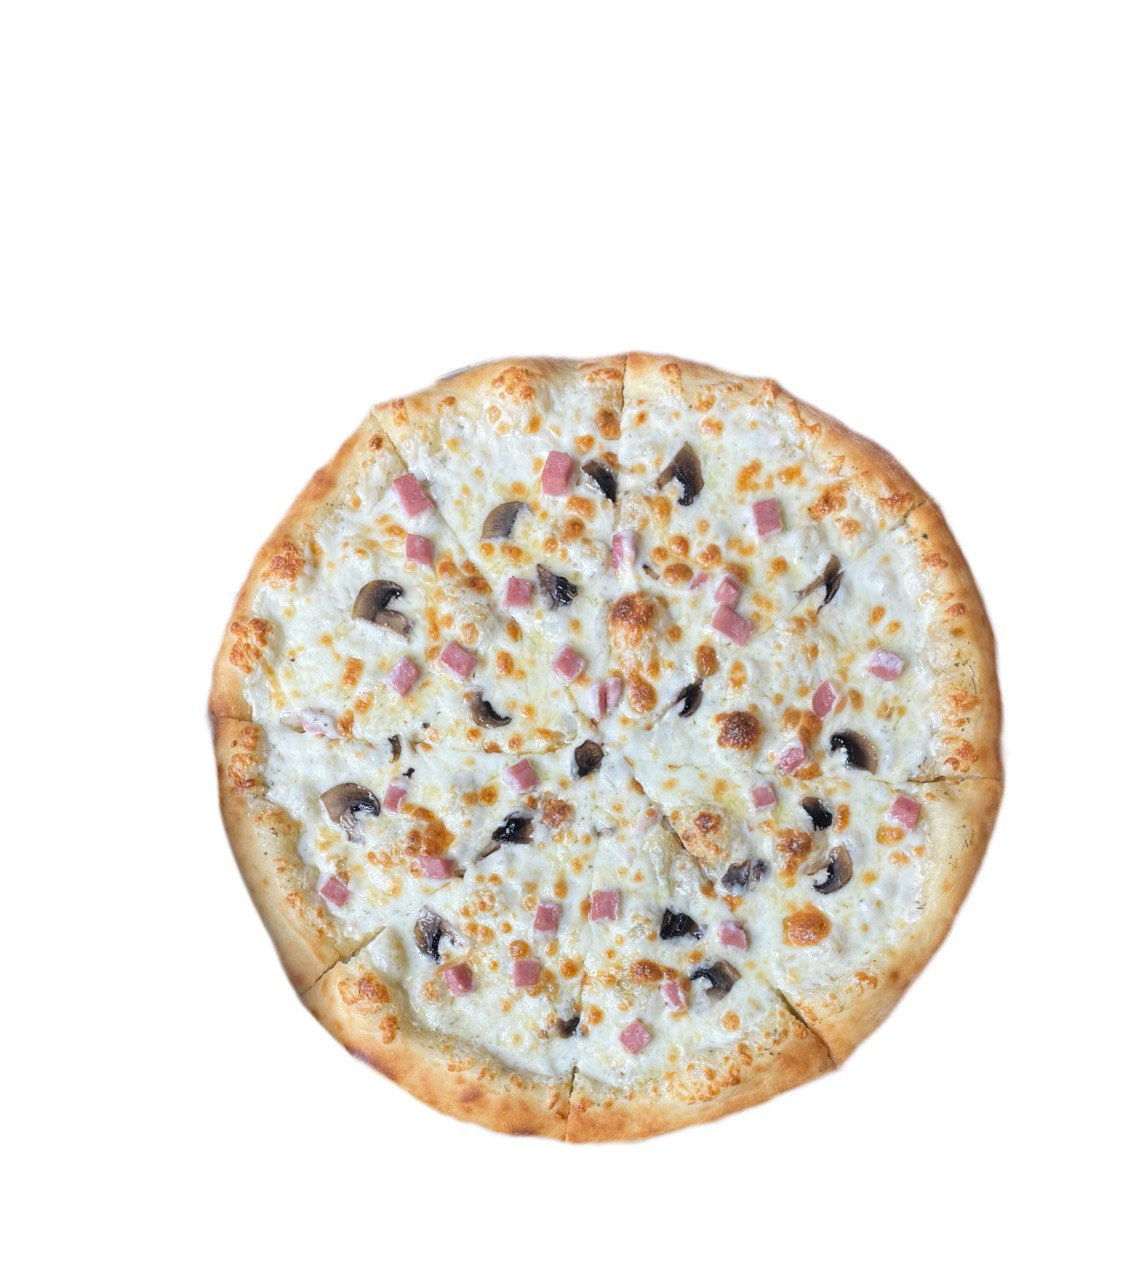 цезарь пицца с ветчиной и грибами калорийность фото 113